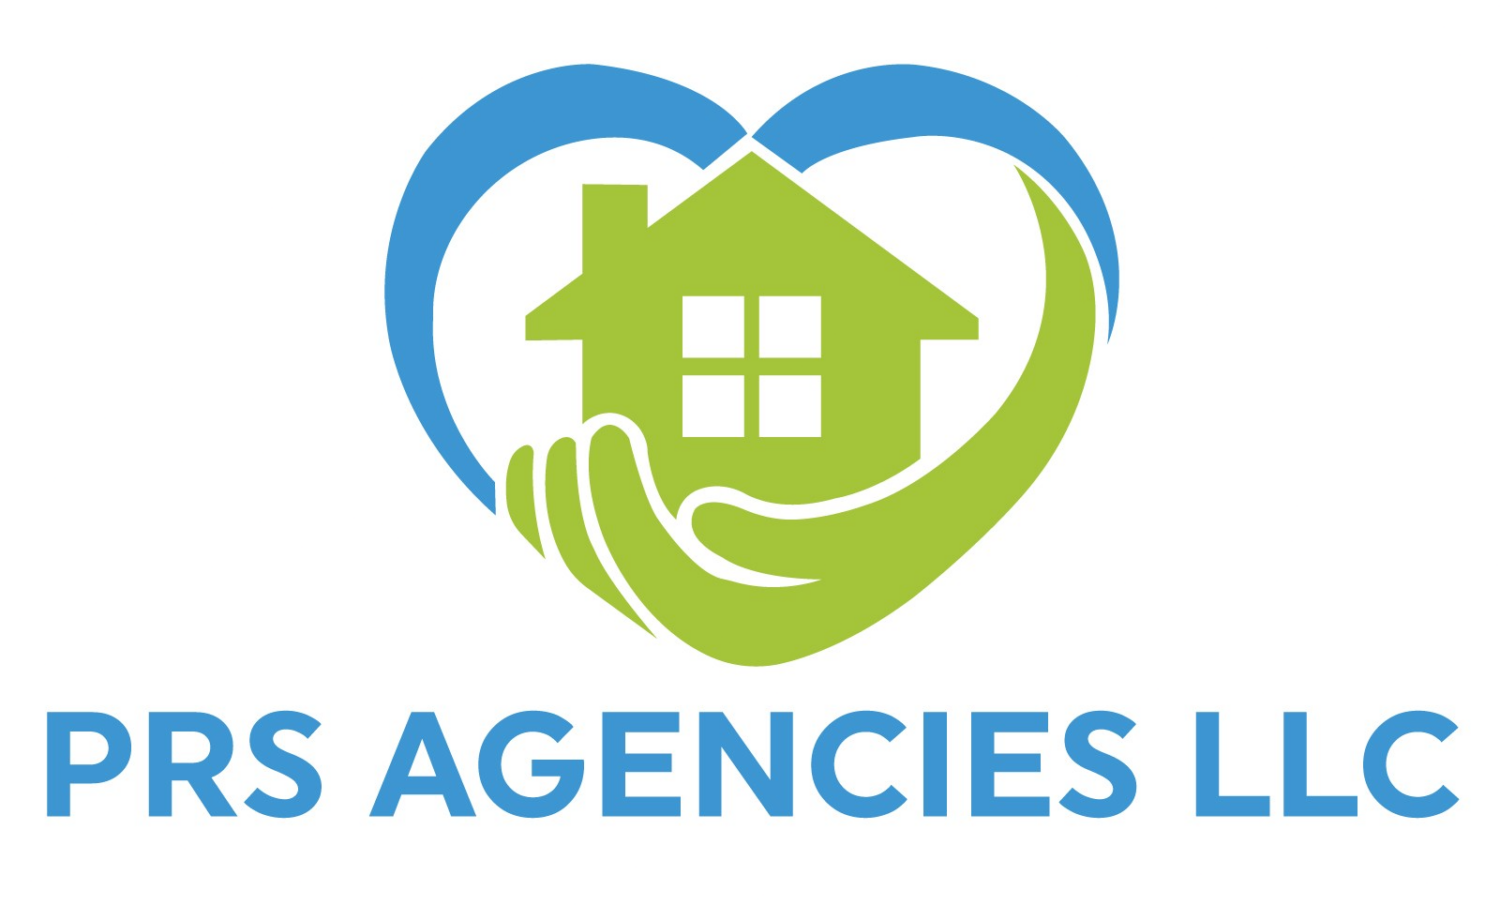 PRS Agencies LLC